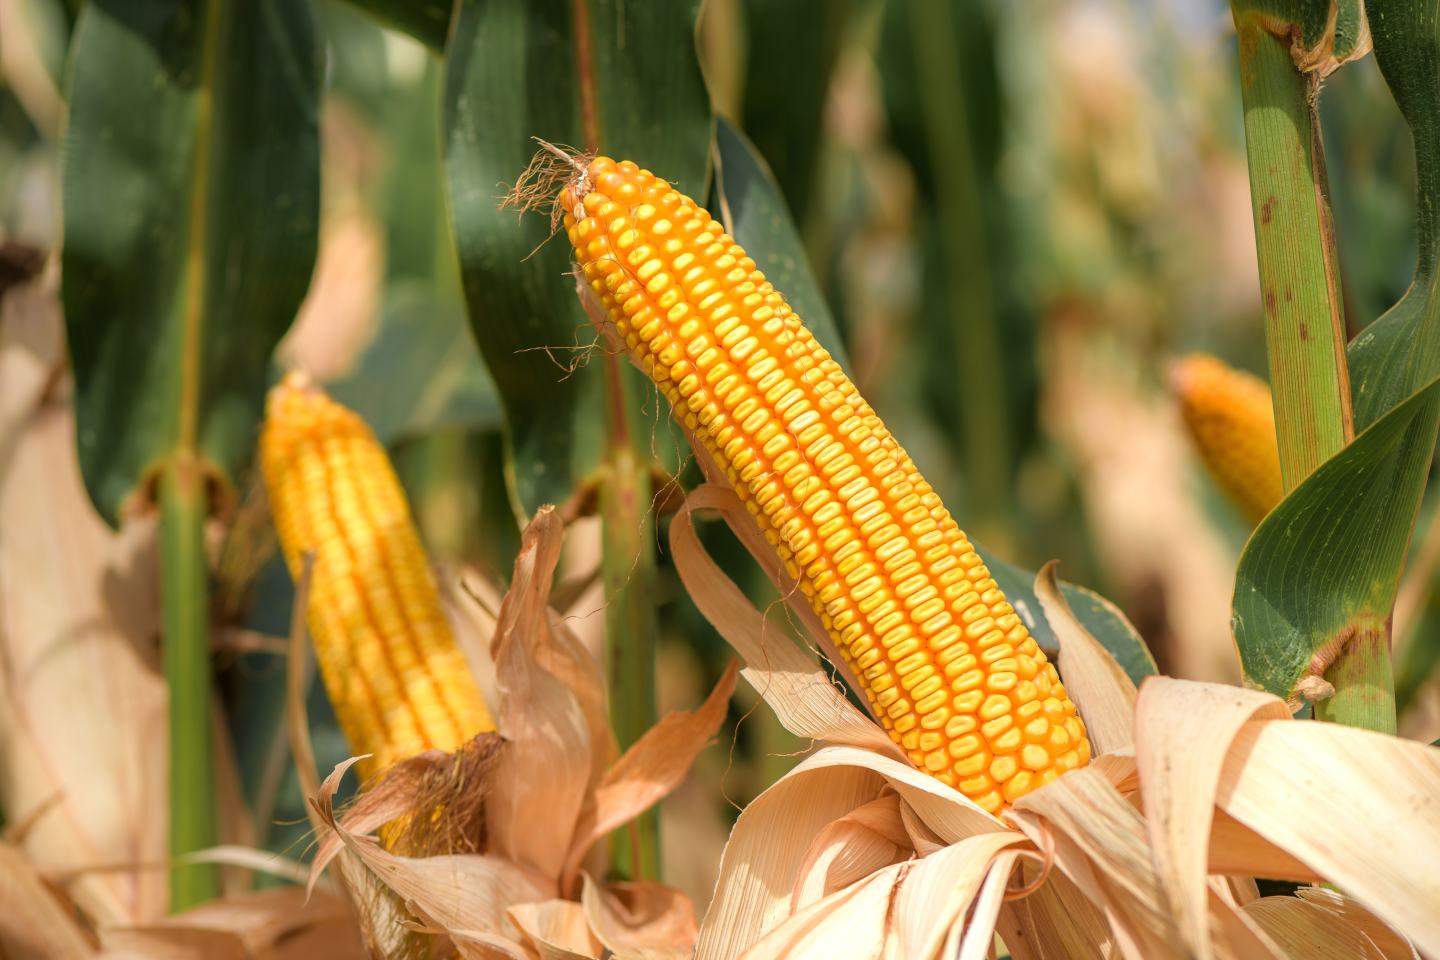 Cobs of field corn